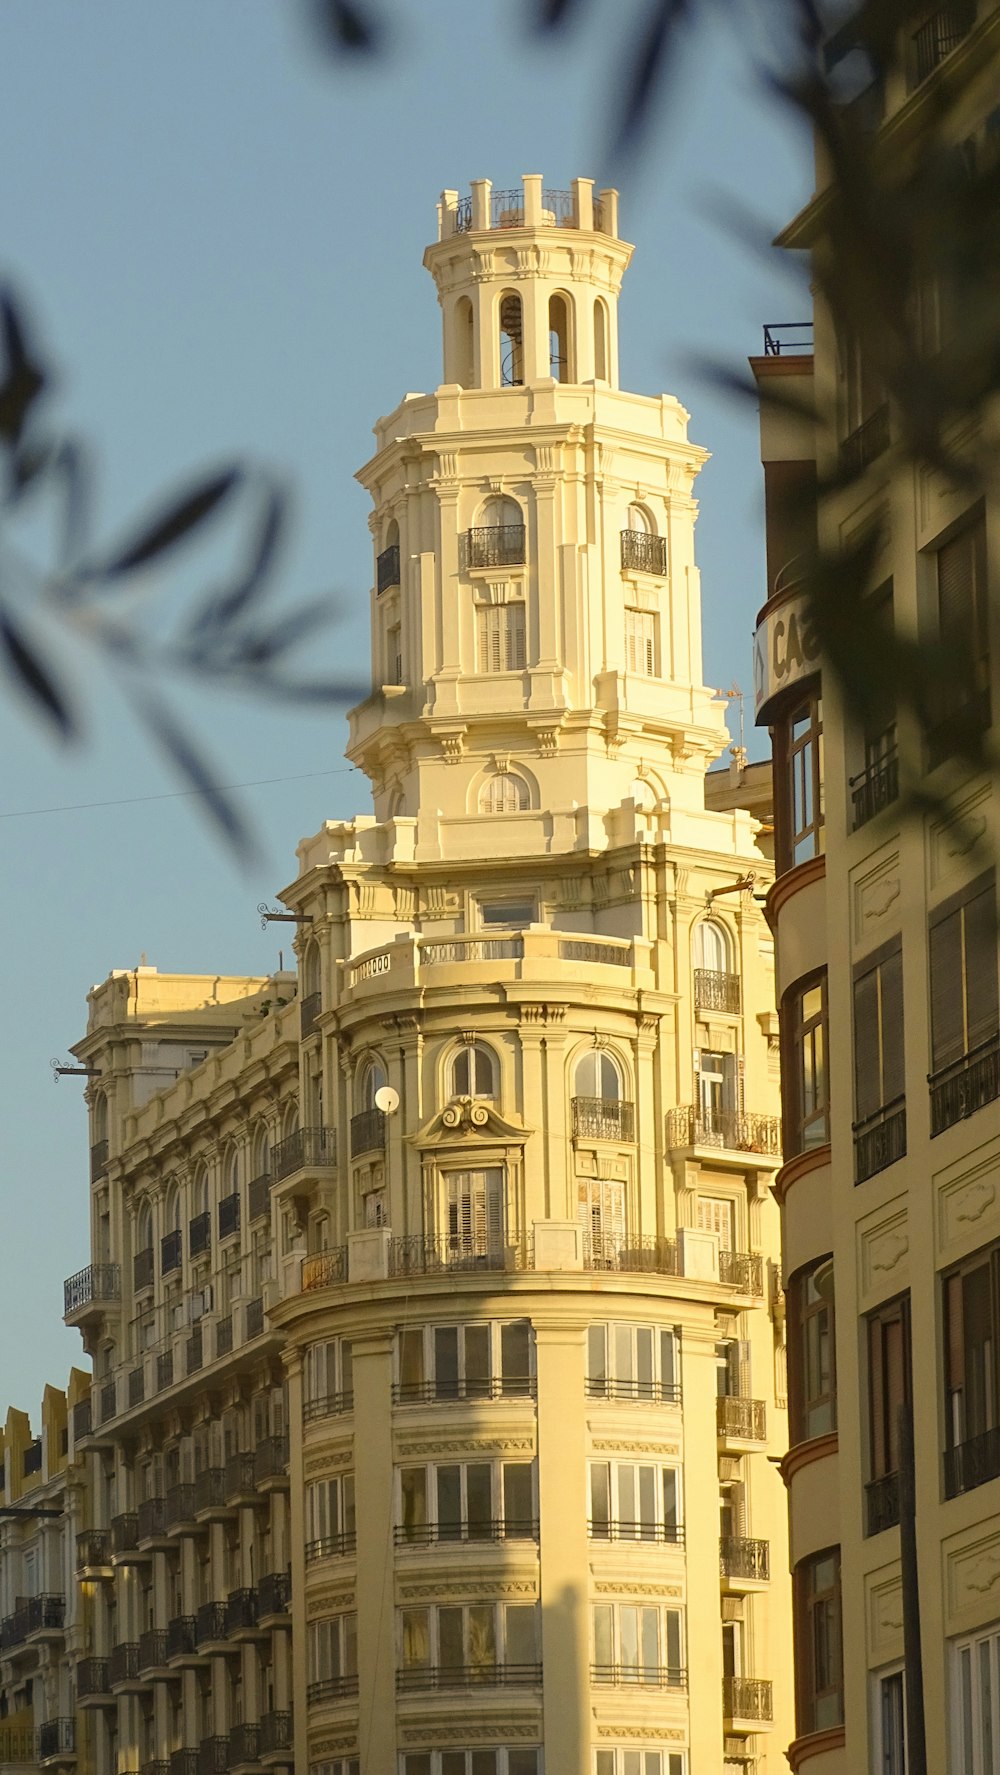 Un edificio alto con un reloj en la parte superior